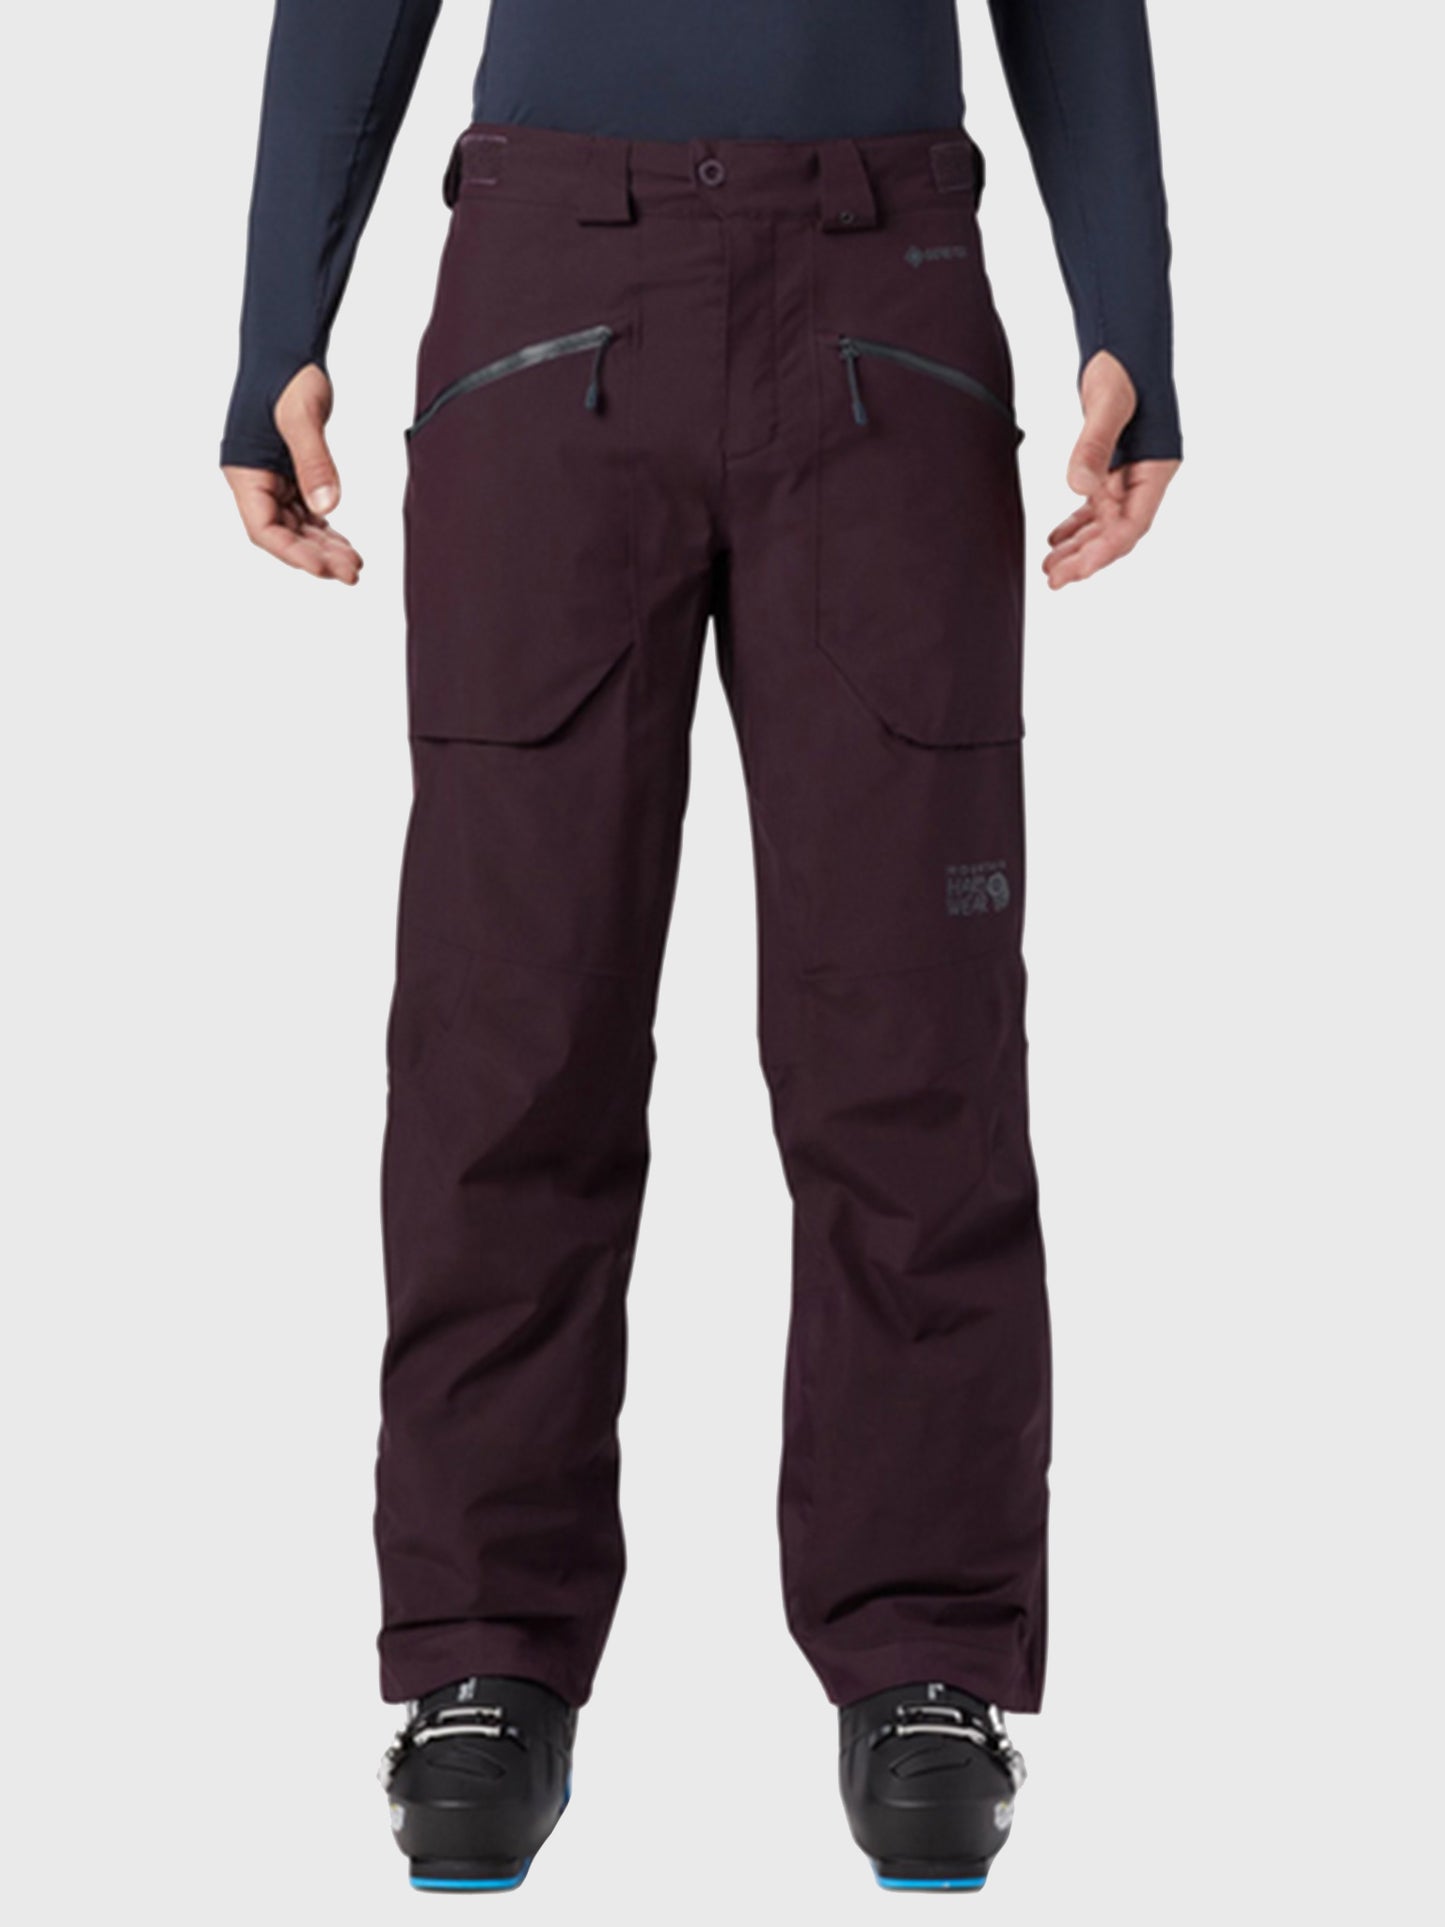 Mountain Hardwear Cloud Bank GORE-TEX Insulated Pants - Women's